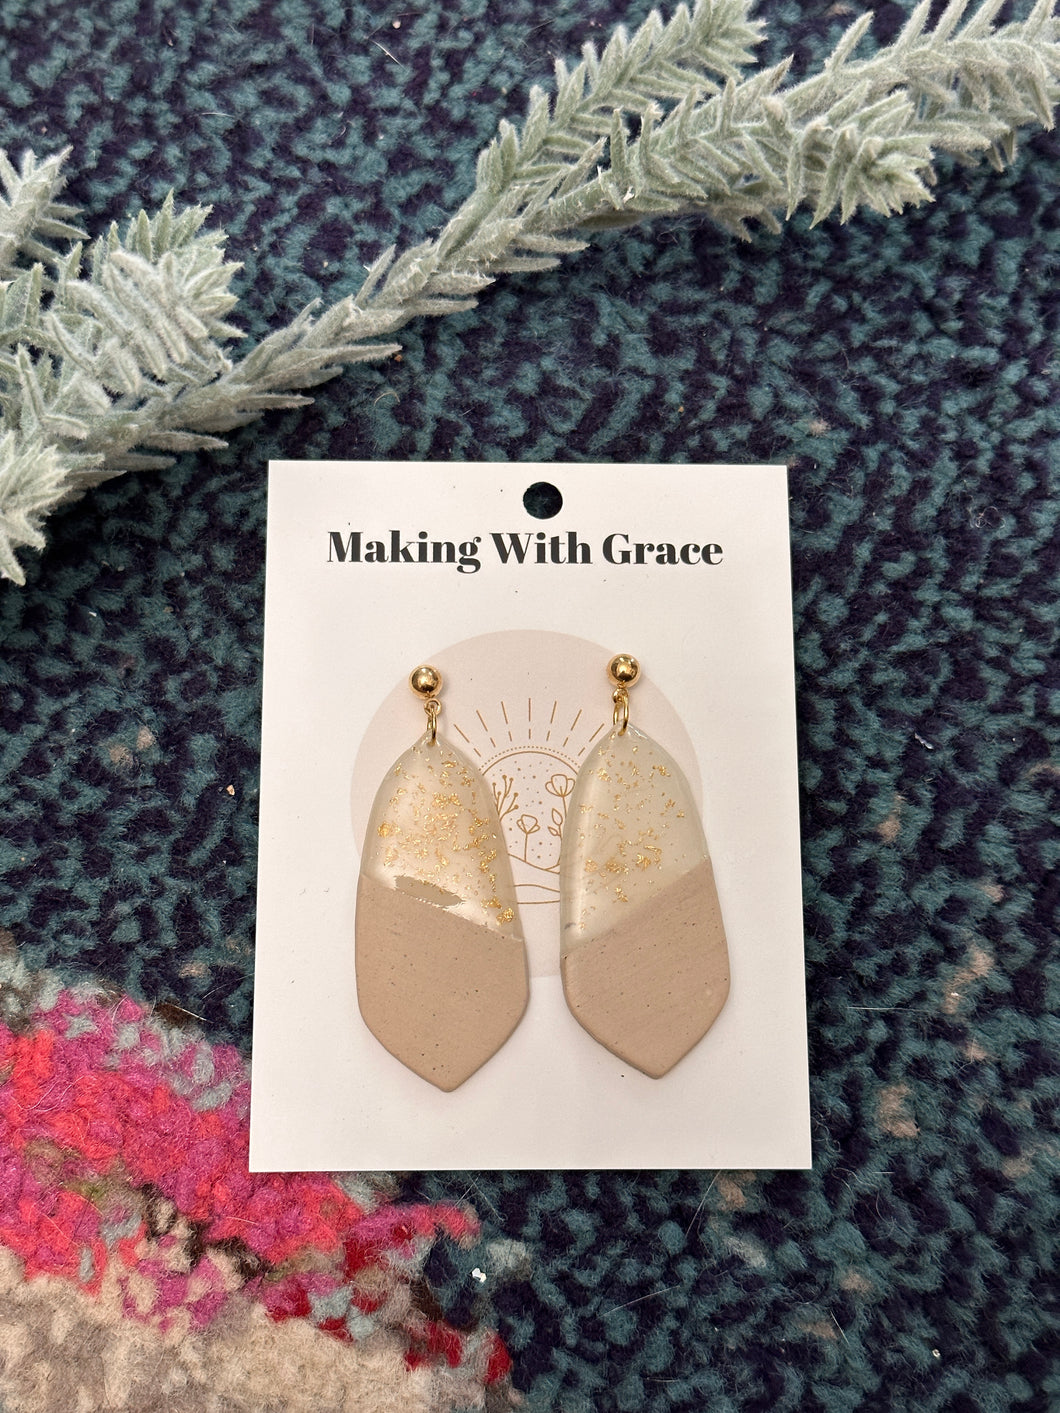 Glitter and faux wood grain earrings